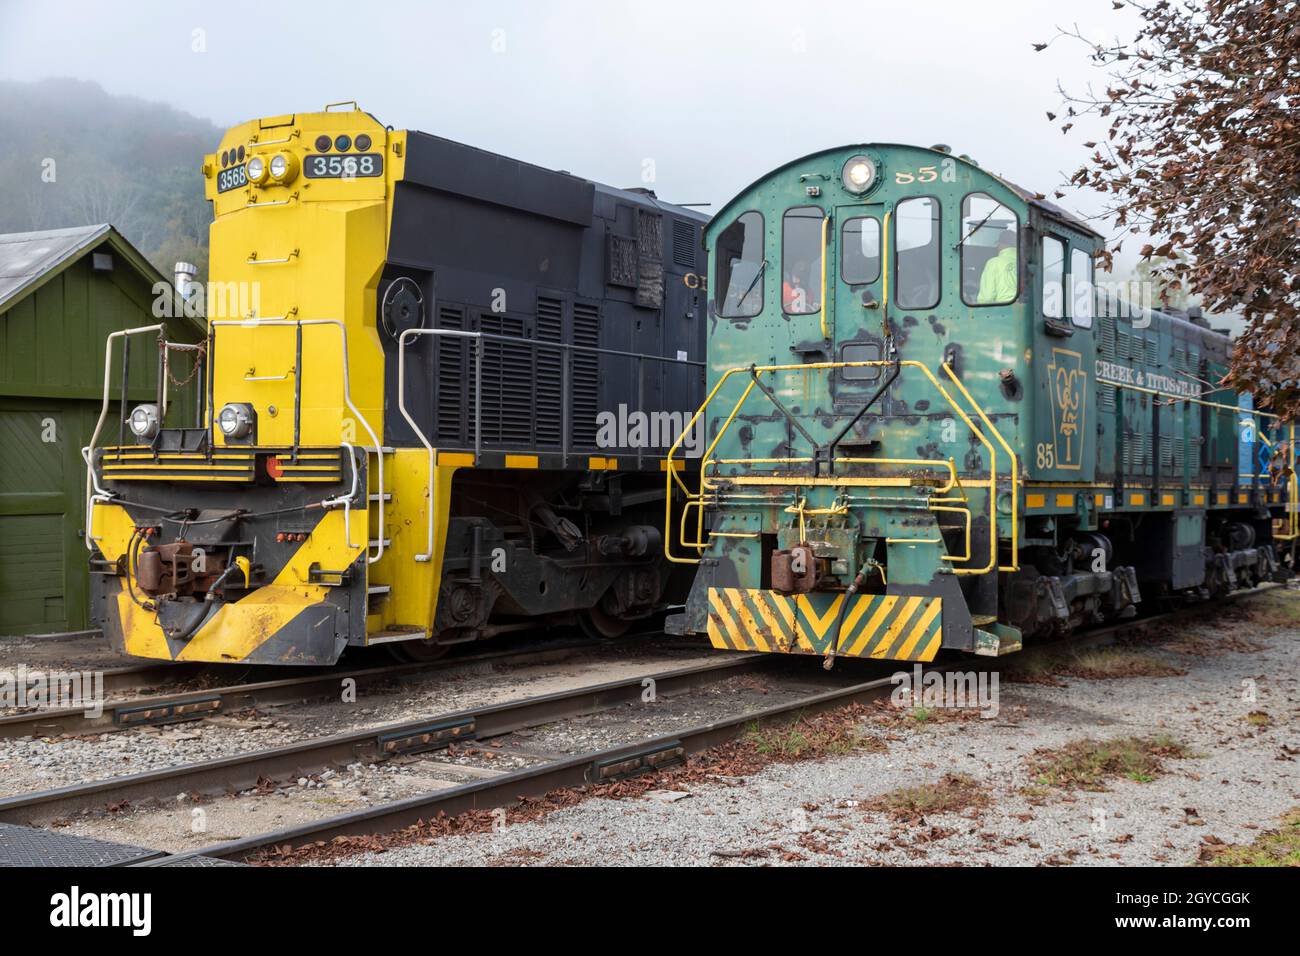 Titusville, Pennsylvania - Lokomotiven der Oil Creek & Titusville Railroad, einer 16.5-Meilen-Strecke, die Sightseeing-Züge für Touristen fährt. Stockfoto